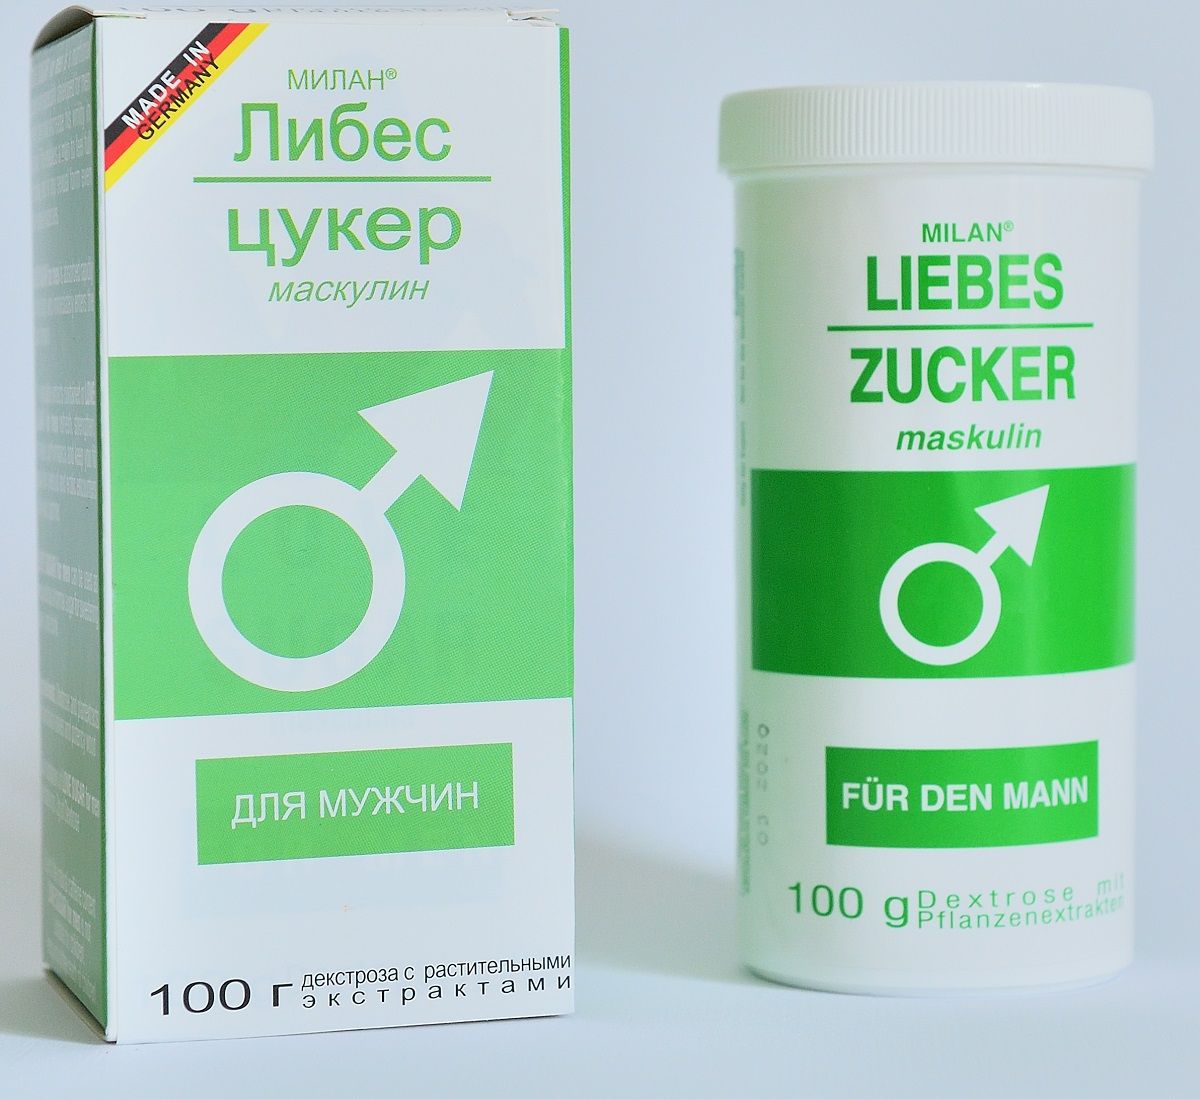 Сахар любви для мужчин Liebes-Zucker maskulin - 100 гр. - фото 138590